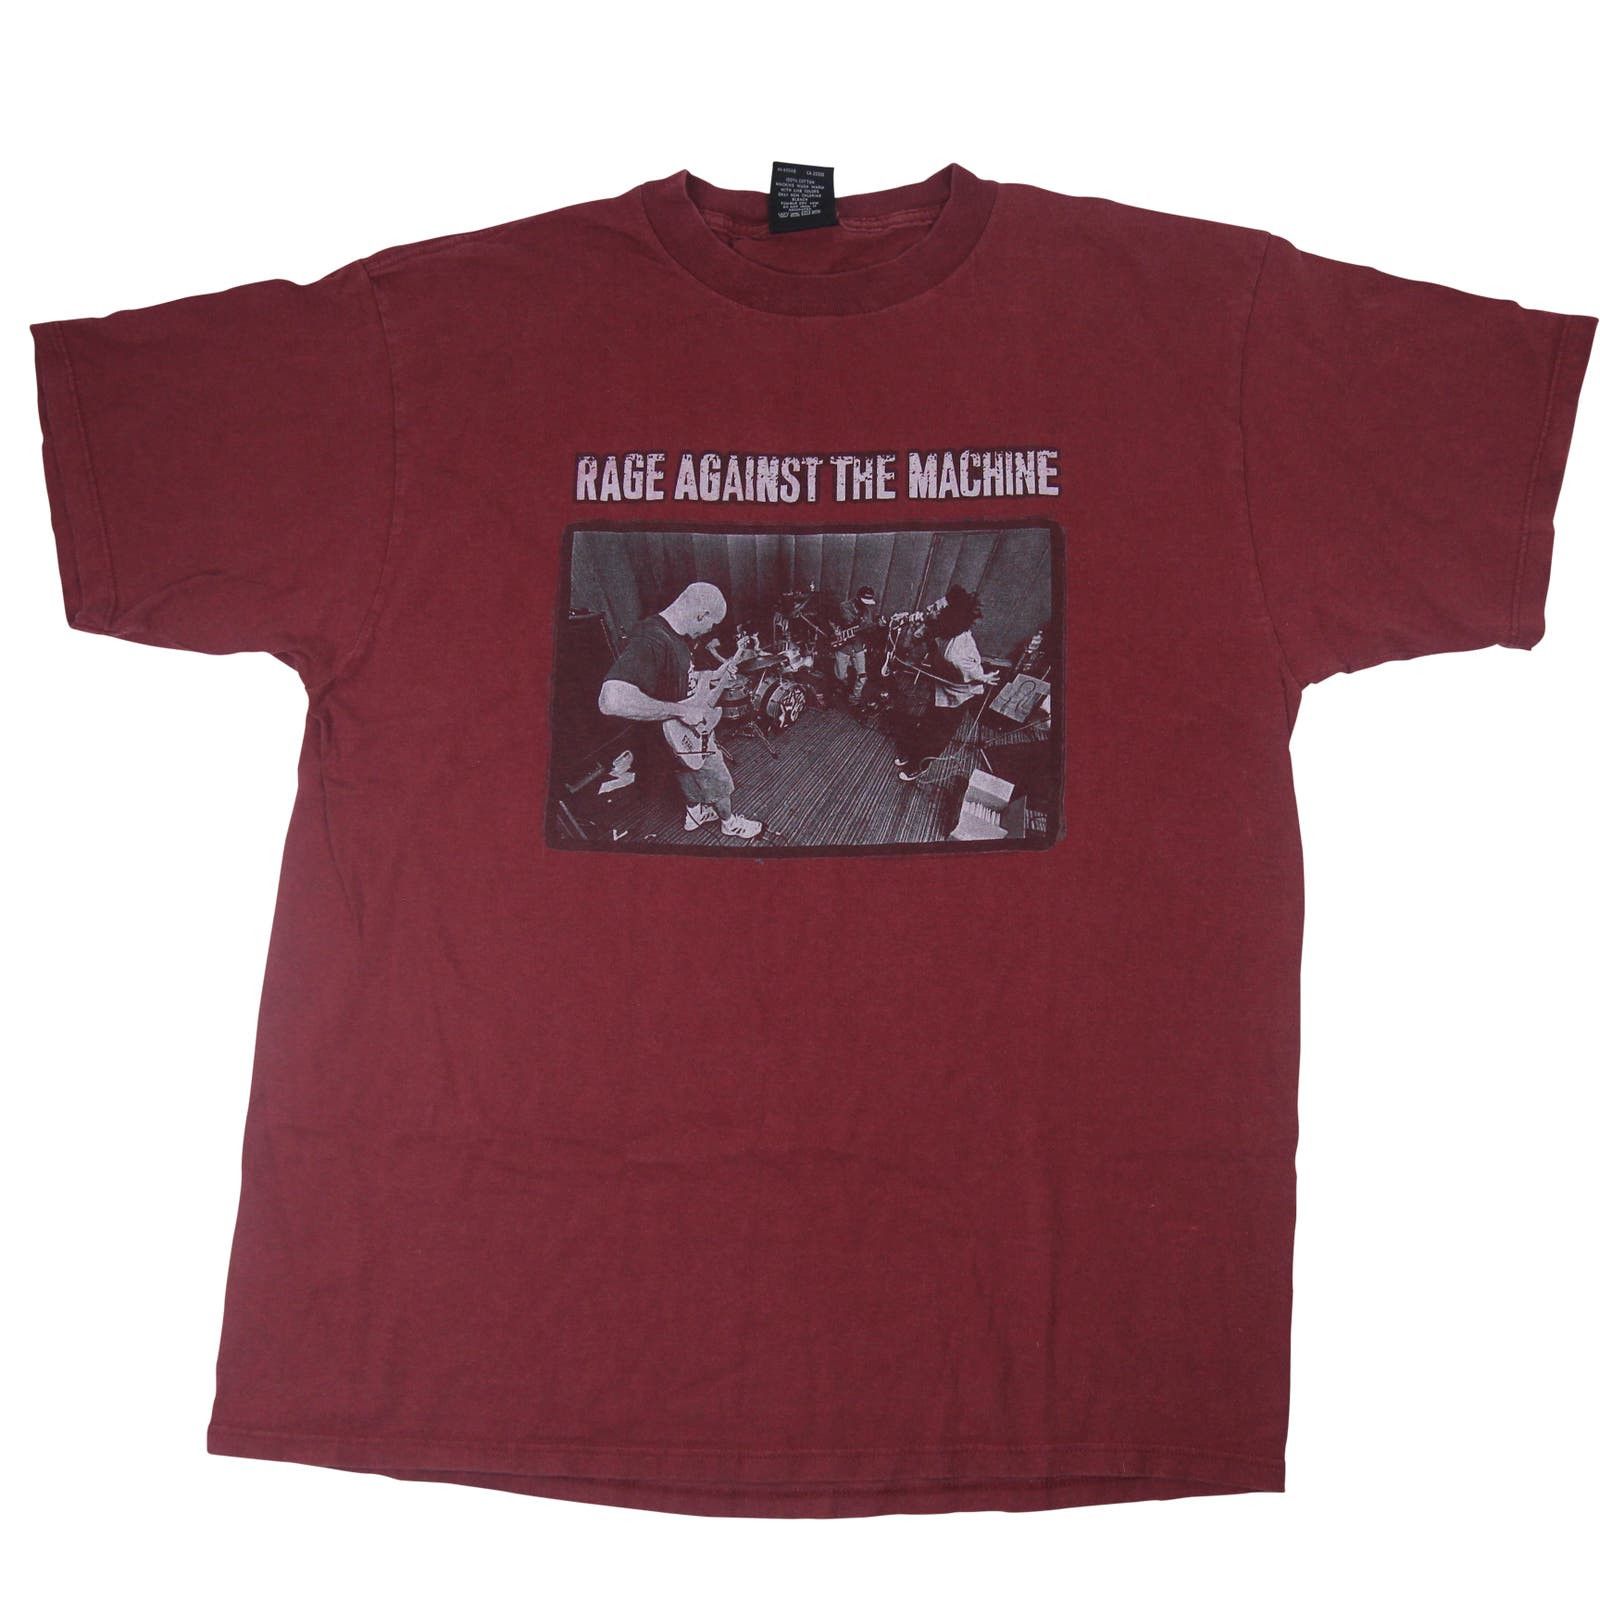 Vintage Vintage 1997 Rage Against the Machine Tour Shirt Size US XL / EU 56 / 4 - 1 Preview